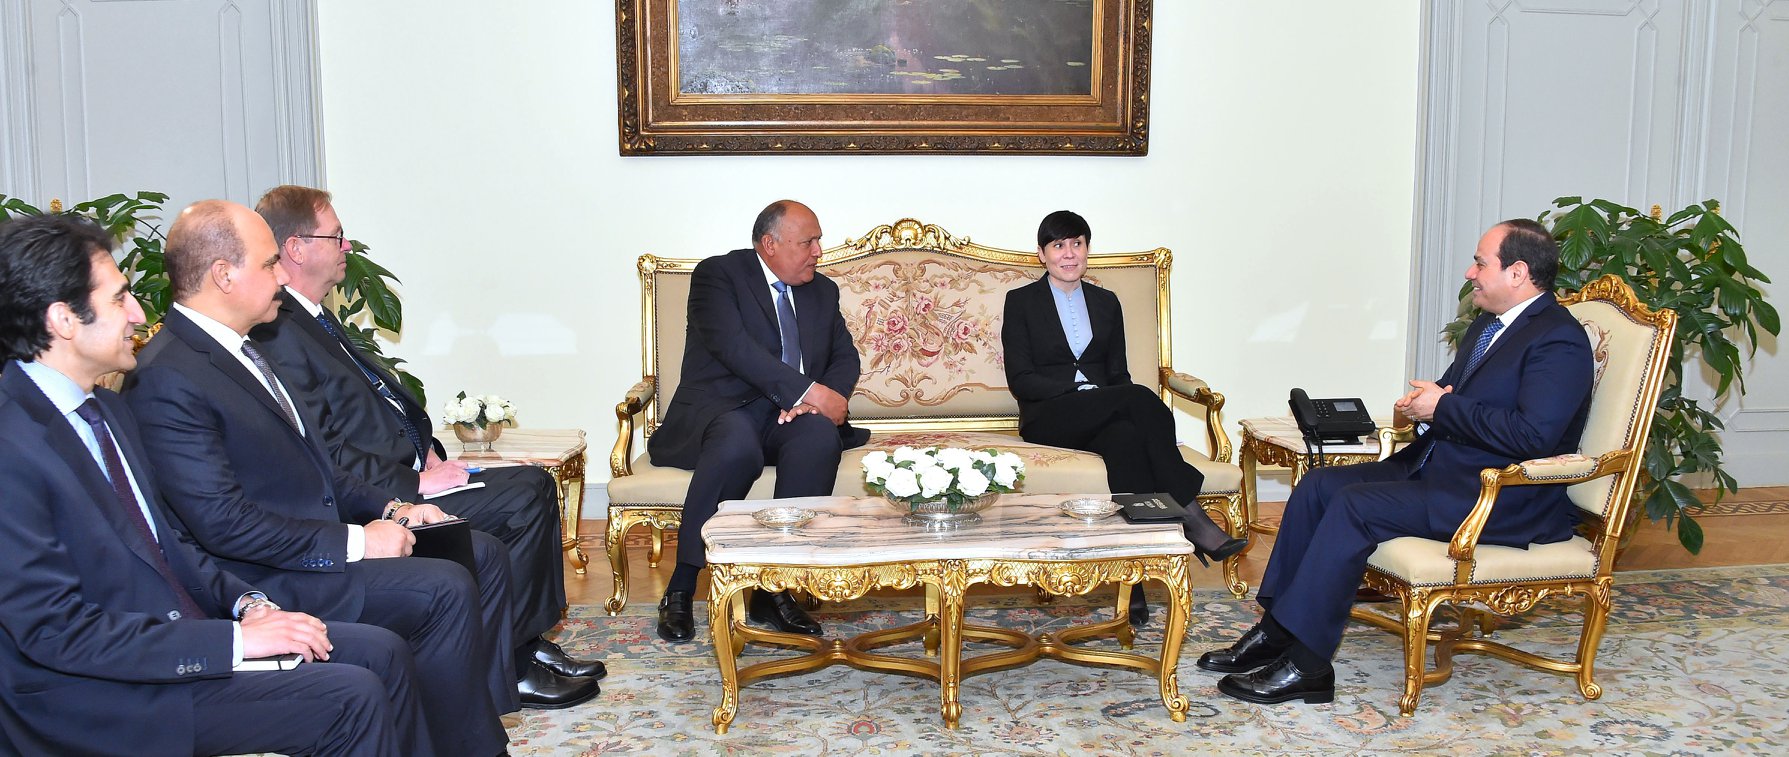 الرئيس المصري عبدالفتاح السيسي يلتقي مع وزيرة خارجية النرويج أينه سواريدي